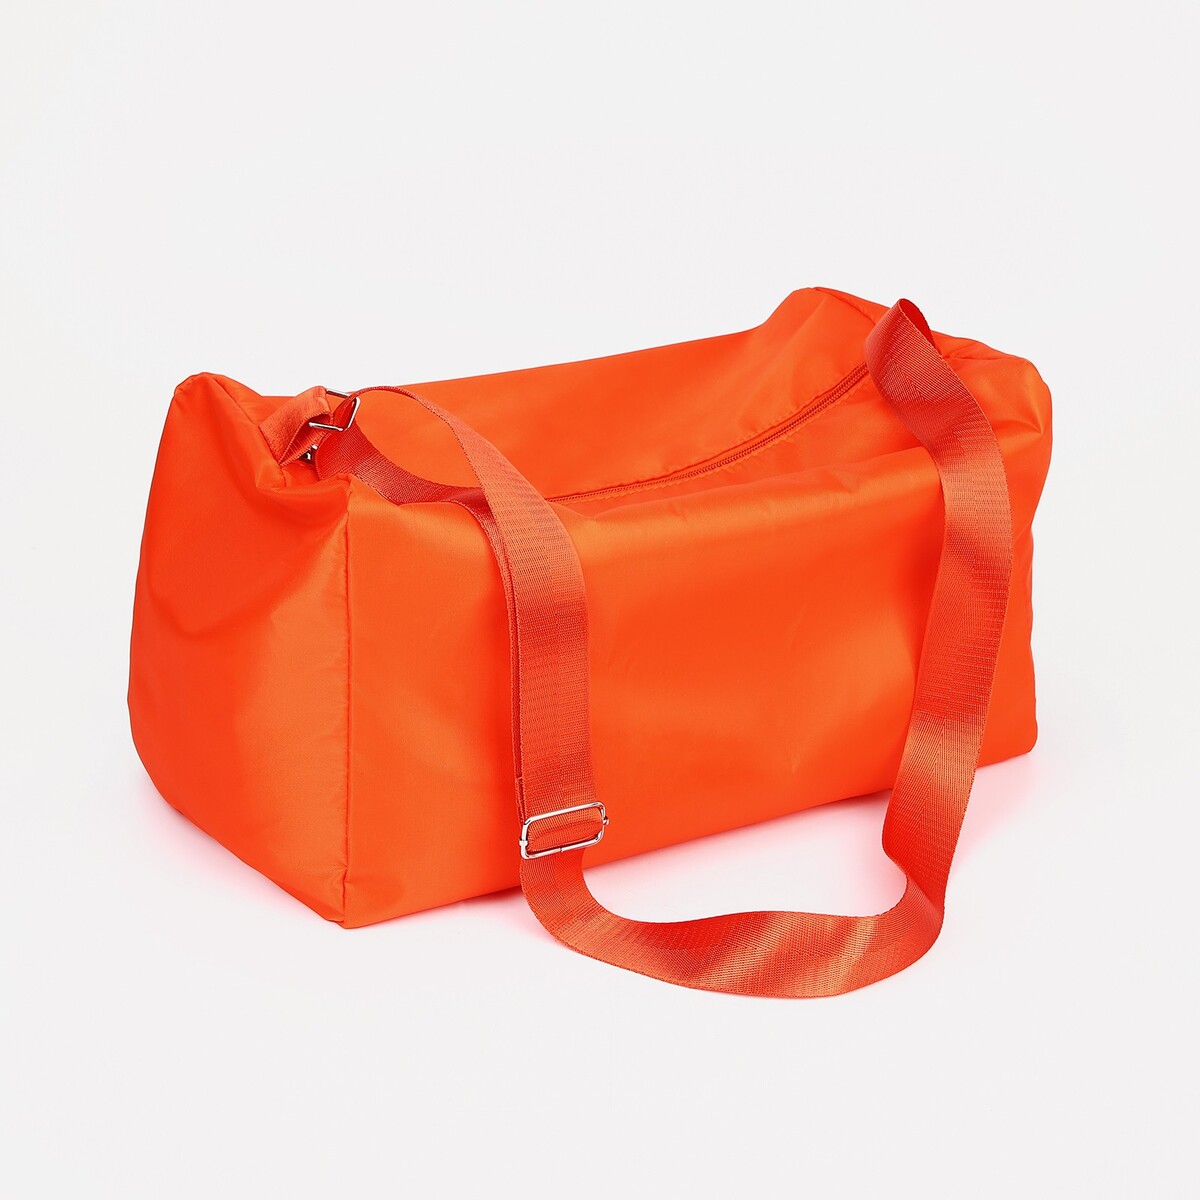 Сумка спортивная на молнии, регулируемый ремень, цвет оранжевый сумка багет отдел на молнии регулируемый ремень пудра